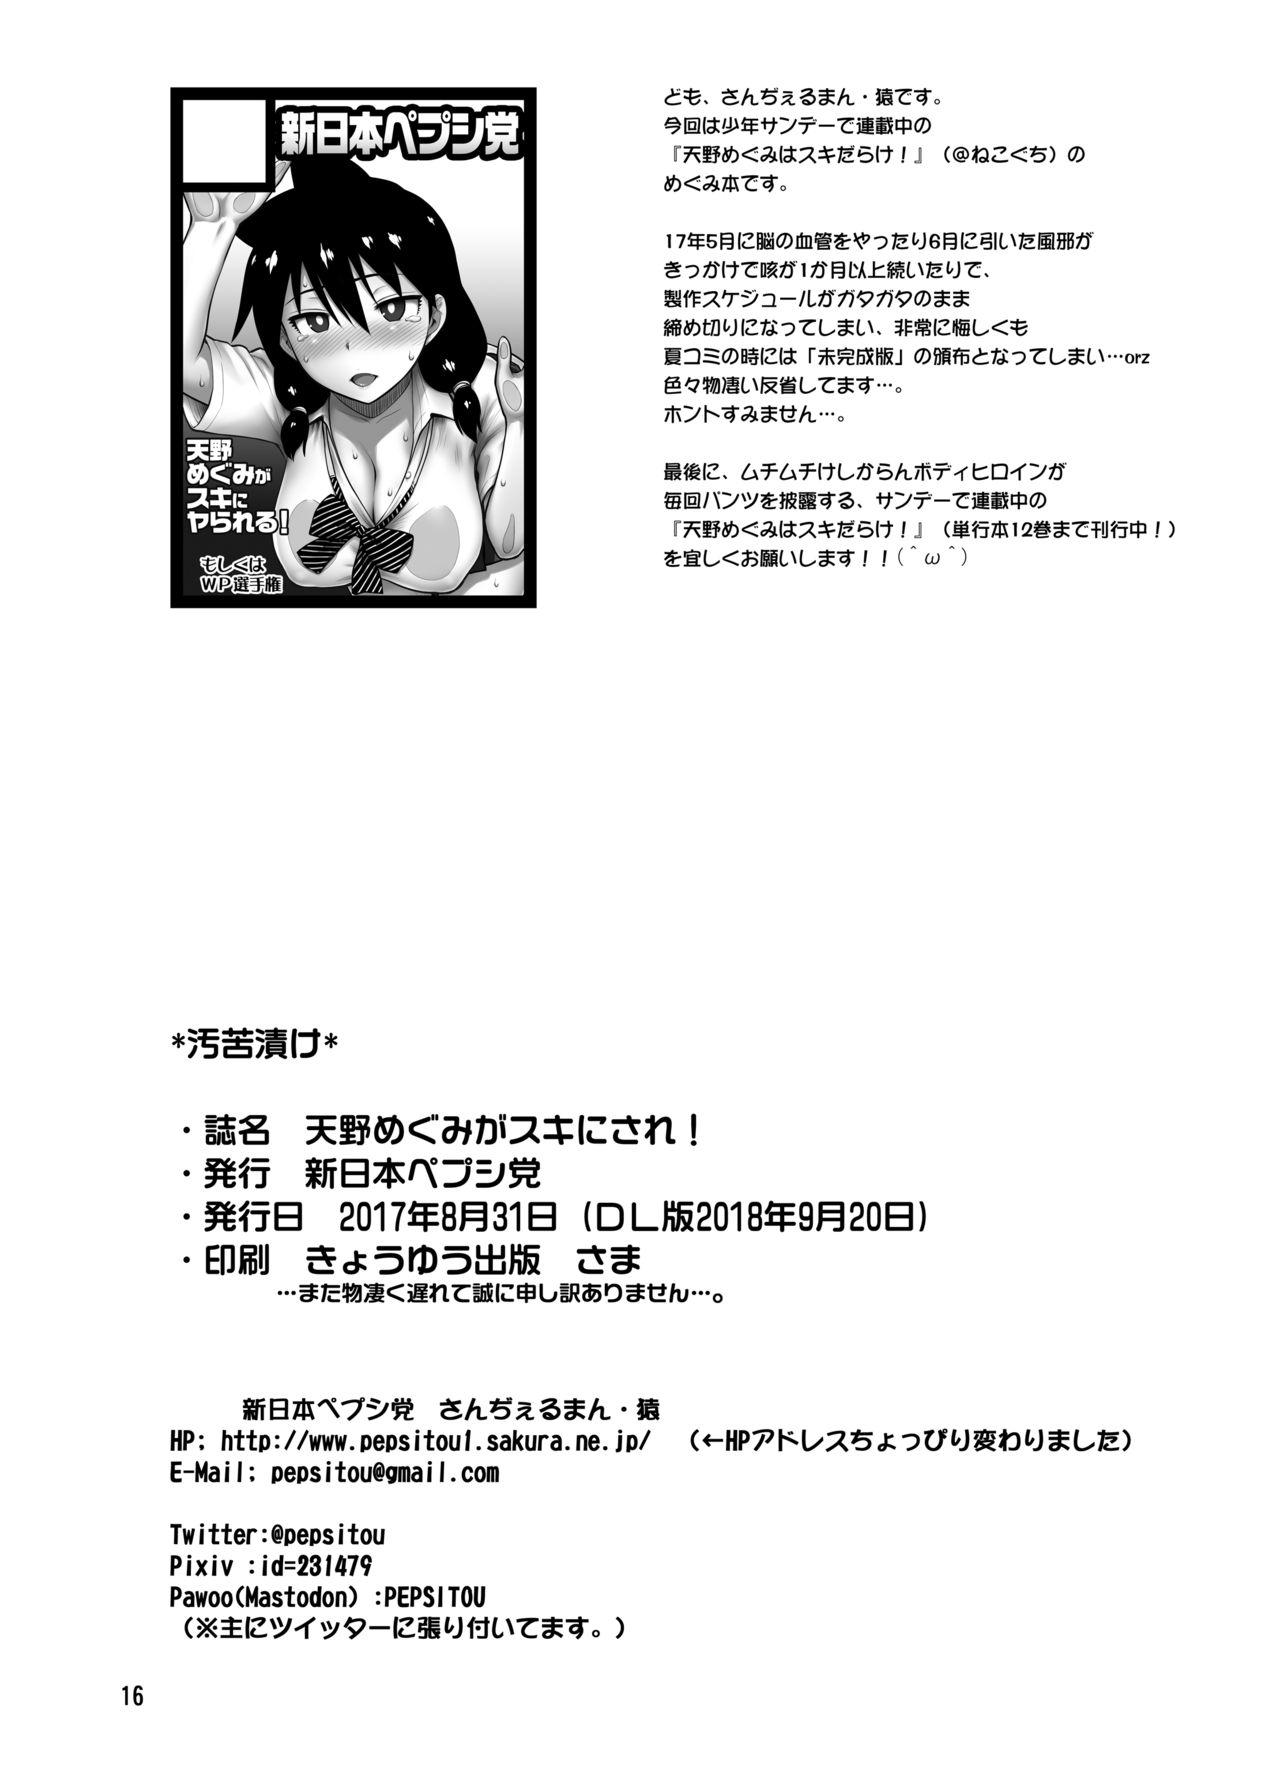 Celebrity Nudes Amano Megumi ga Suki ni sare! - Amano megumi ha sukidarake Gilf - Page 17